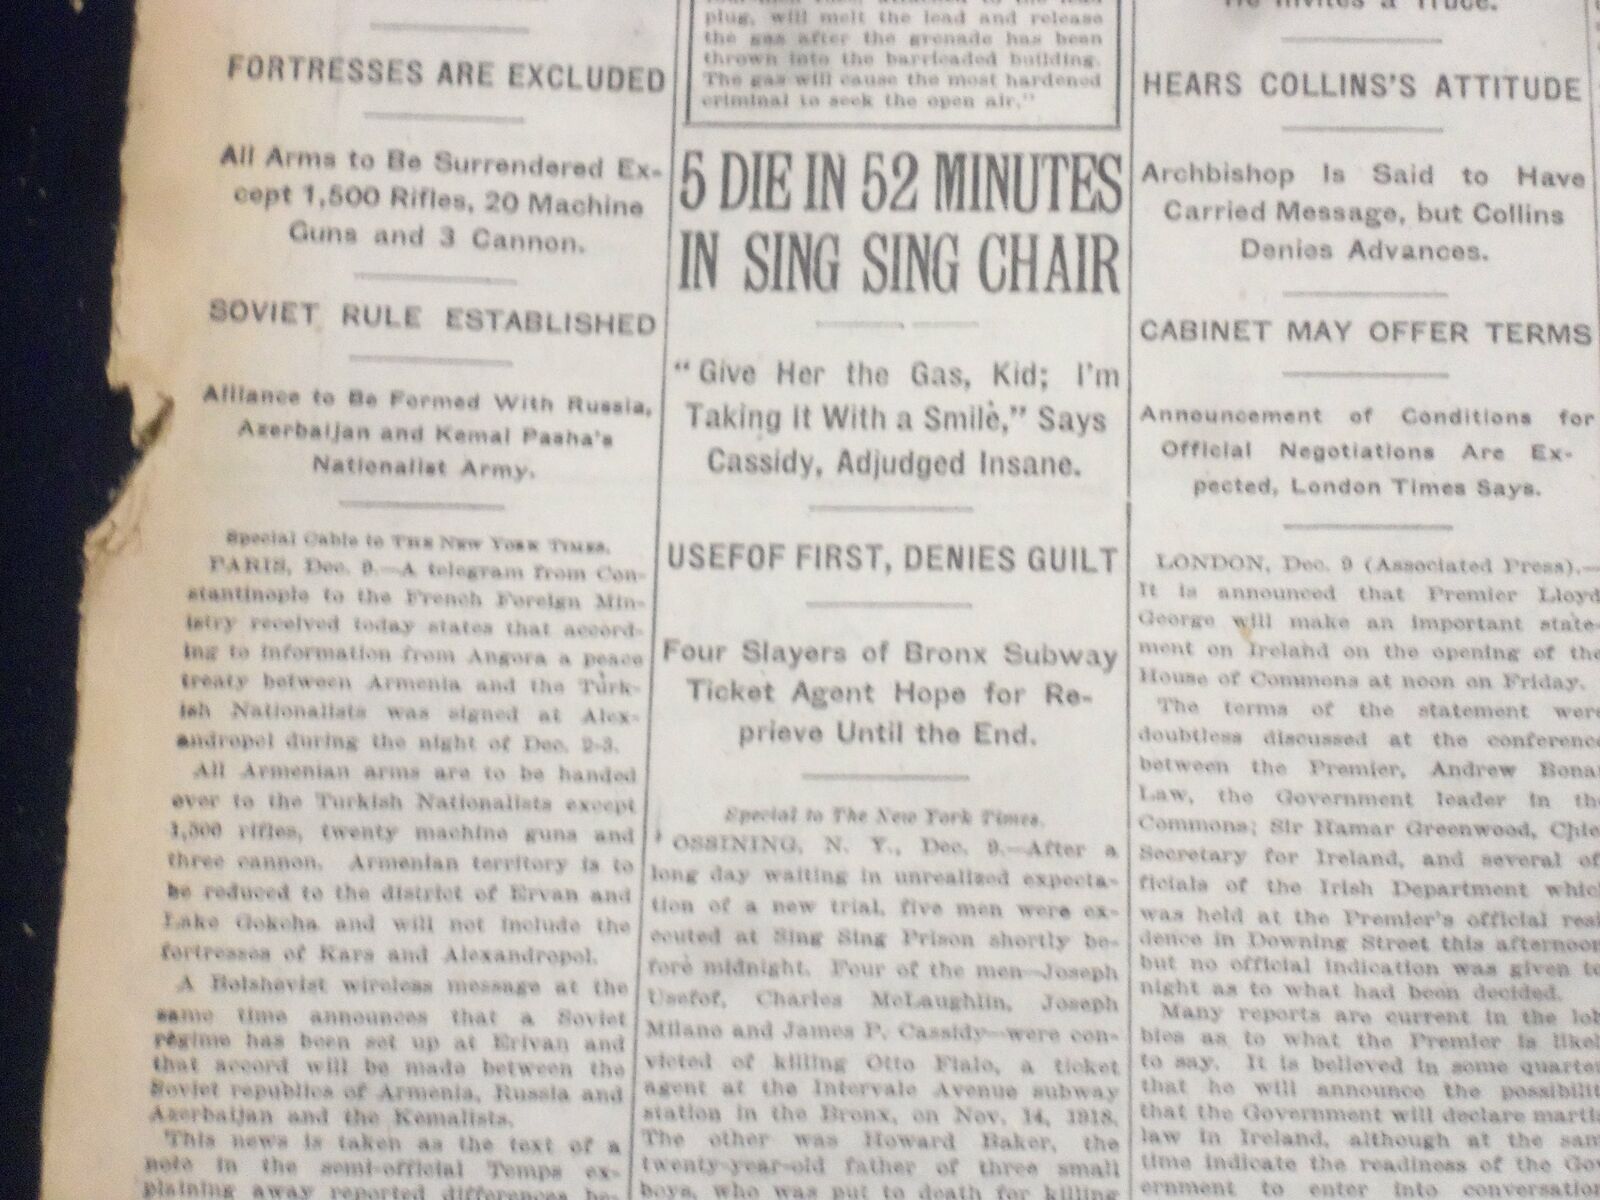 1920 DECEMBER 10 NEW YORK TIMES - 5 DIE IN 52 MINUTES IN SING SING CHAIR-NT 8480